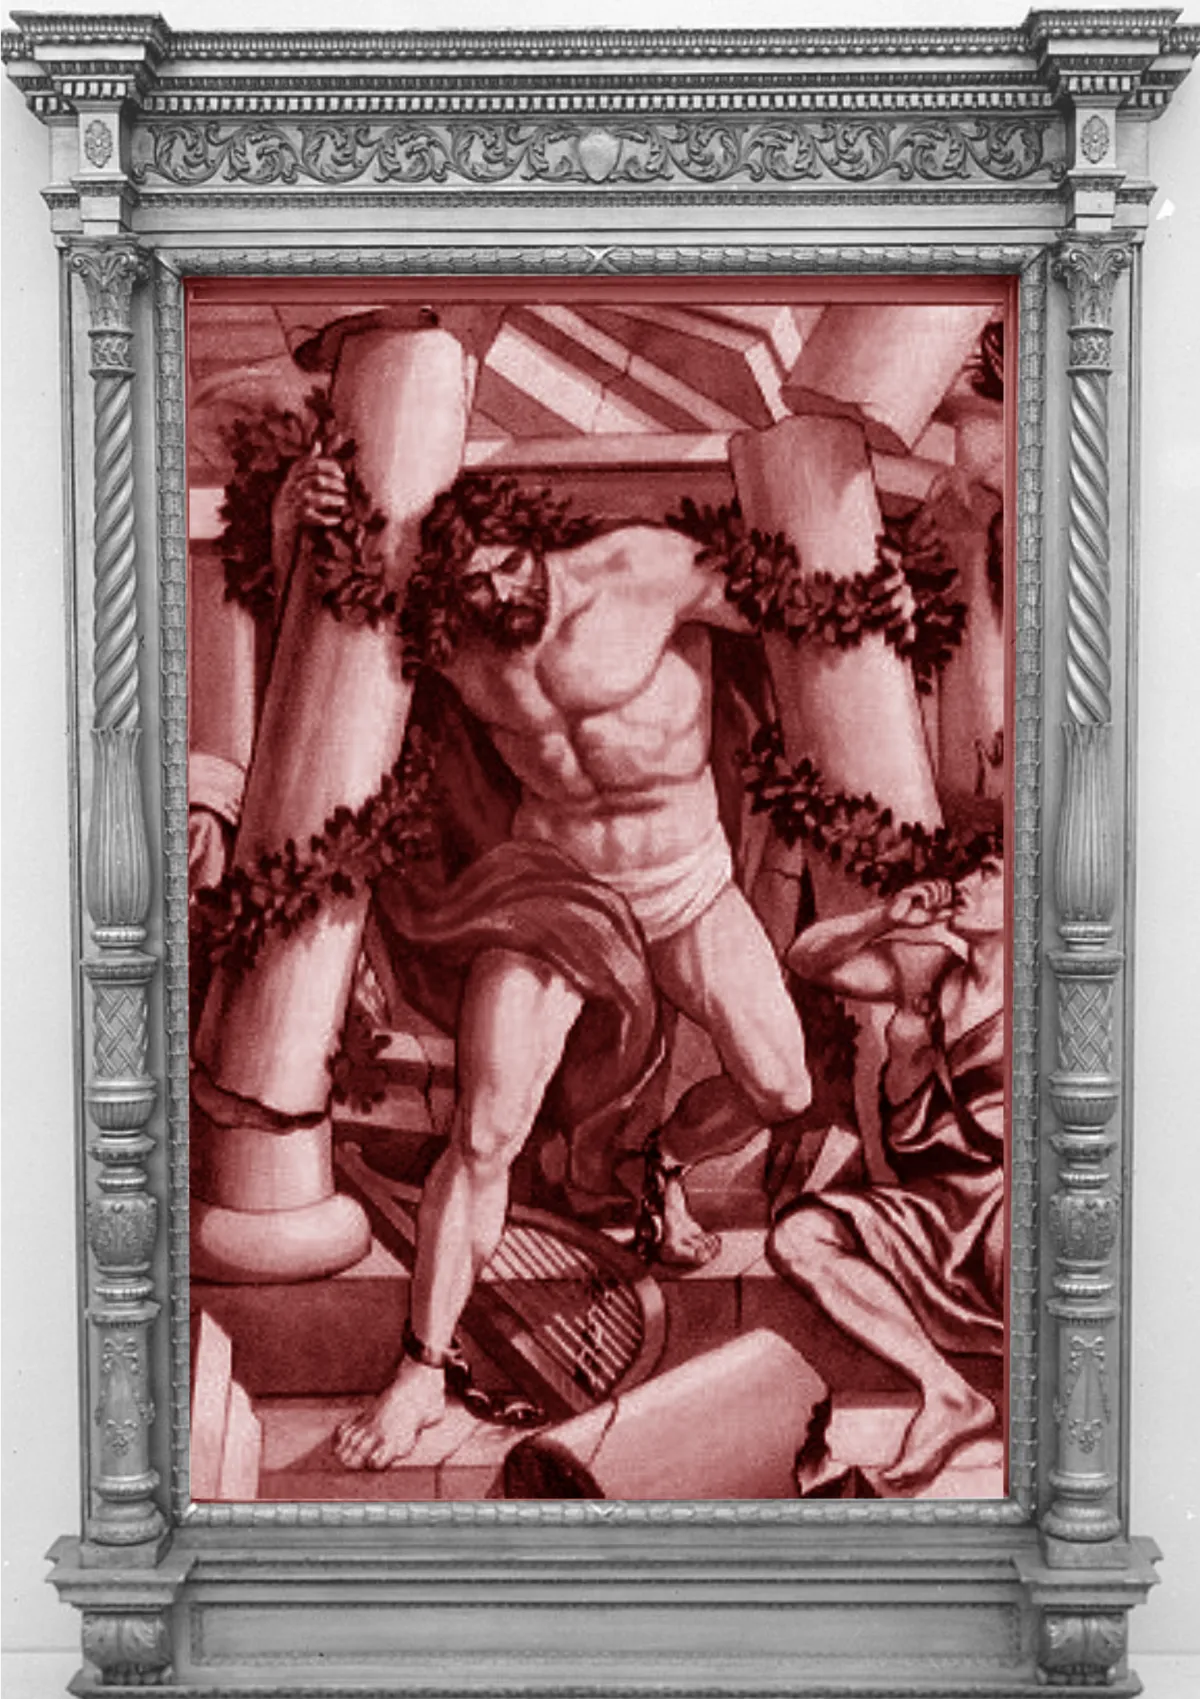 Samson destroys the temple